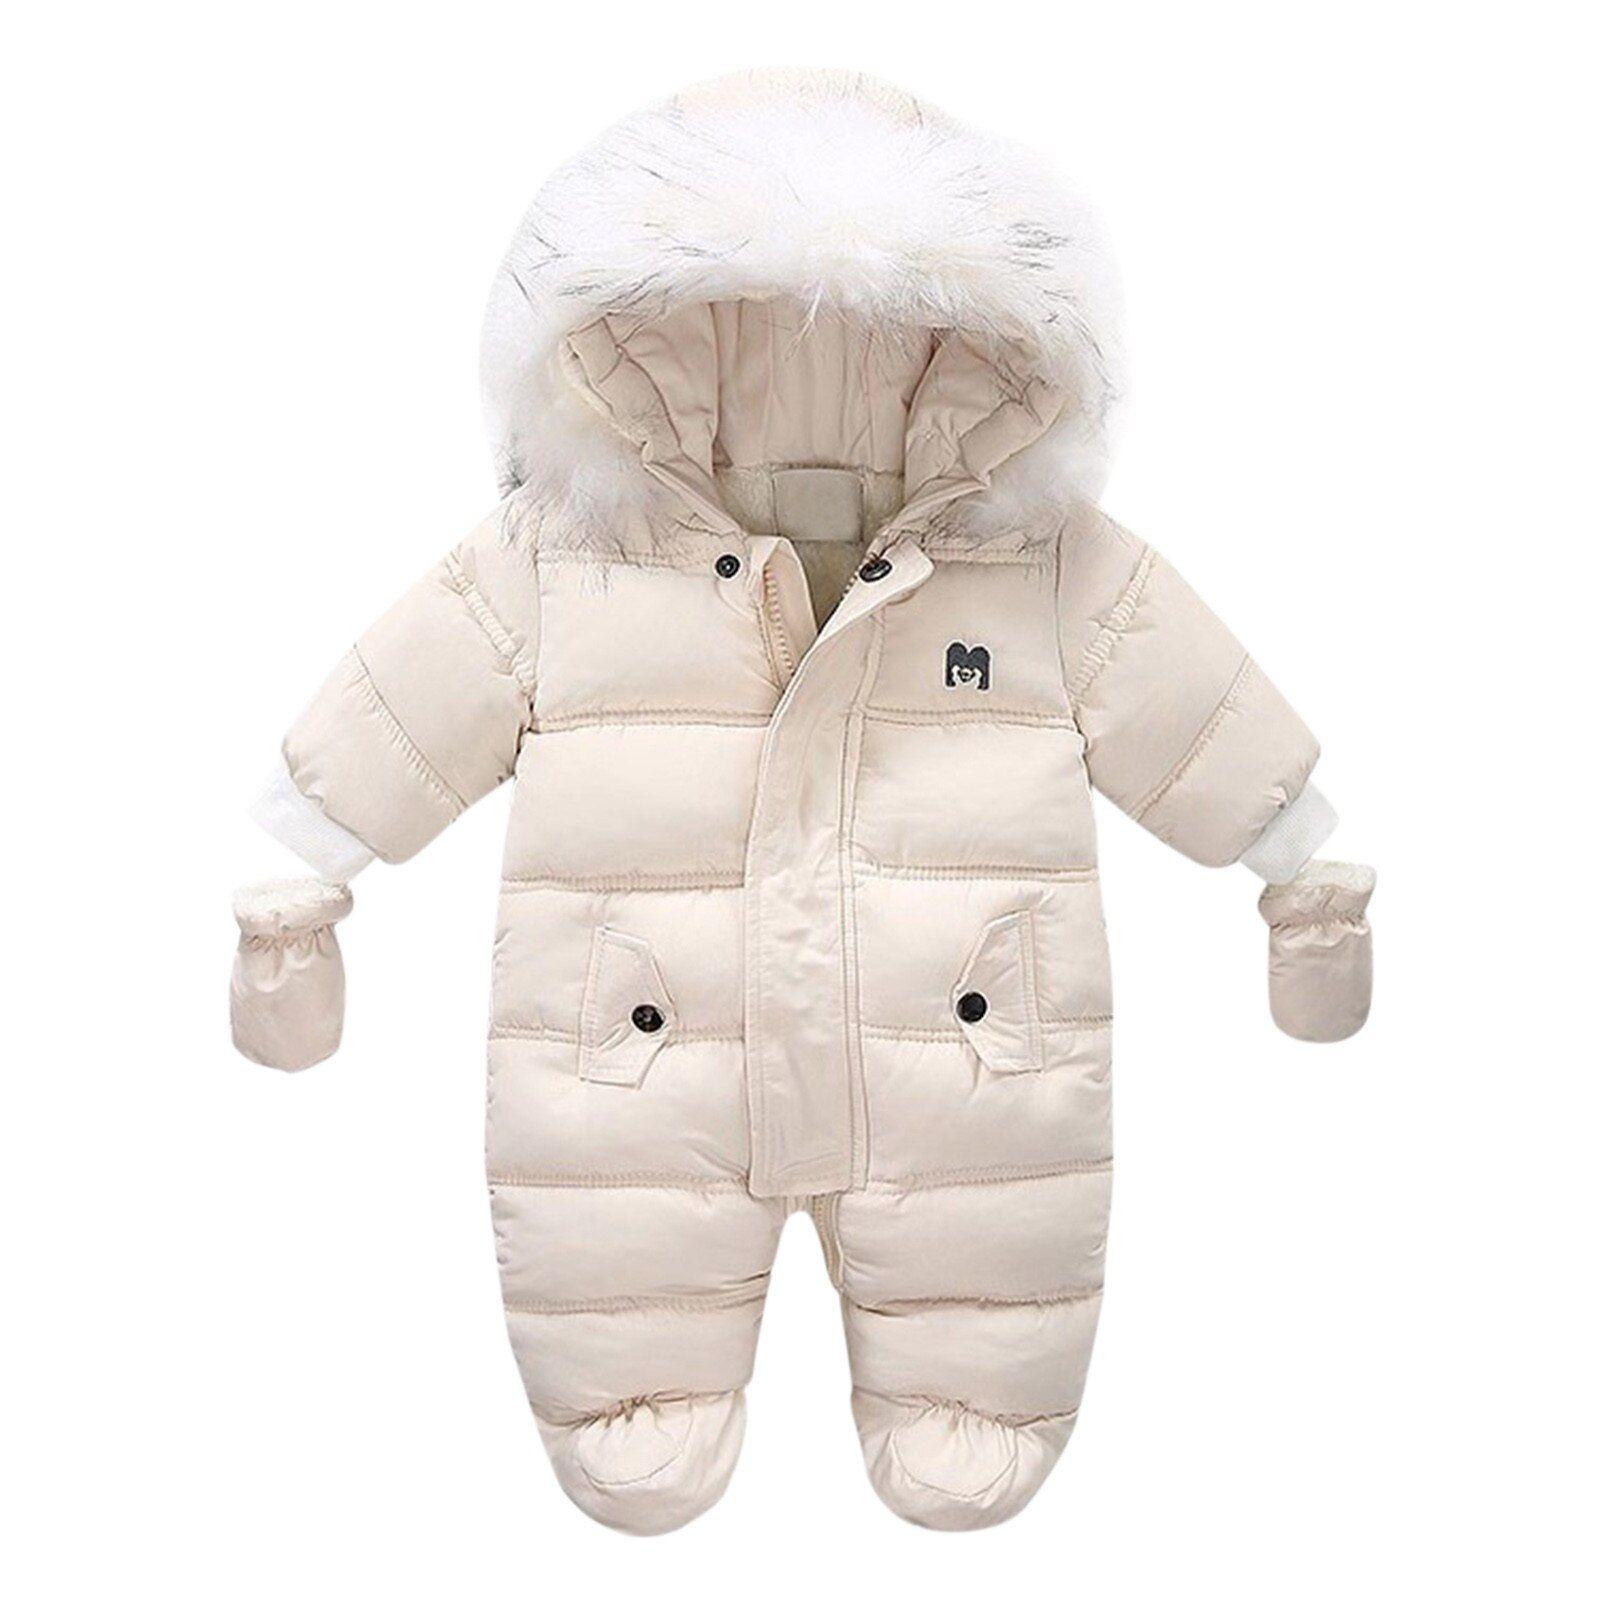 Combinaison d'hiver bébé garçon manches longues avec capuche chaude  combinaison de neige épaisse 104 automne combinaison bébé hiver 98 86  combinaison